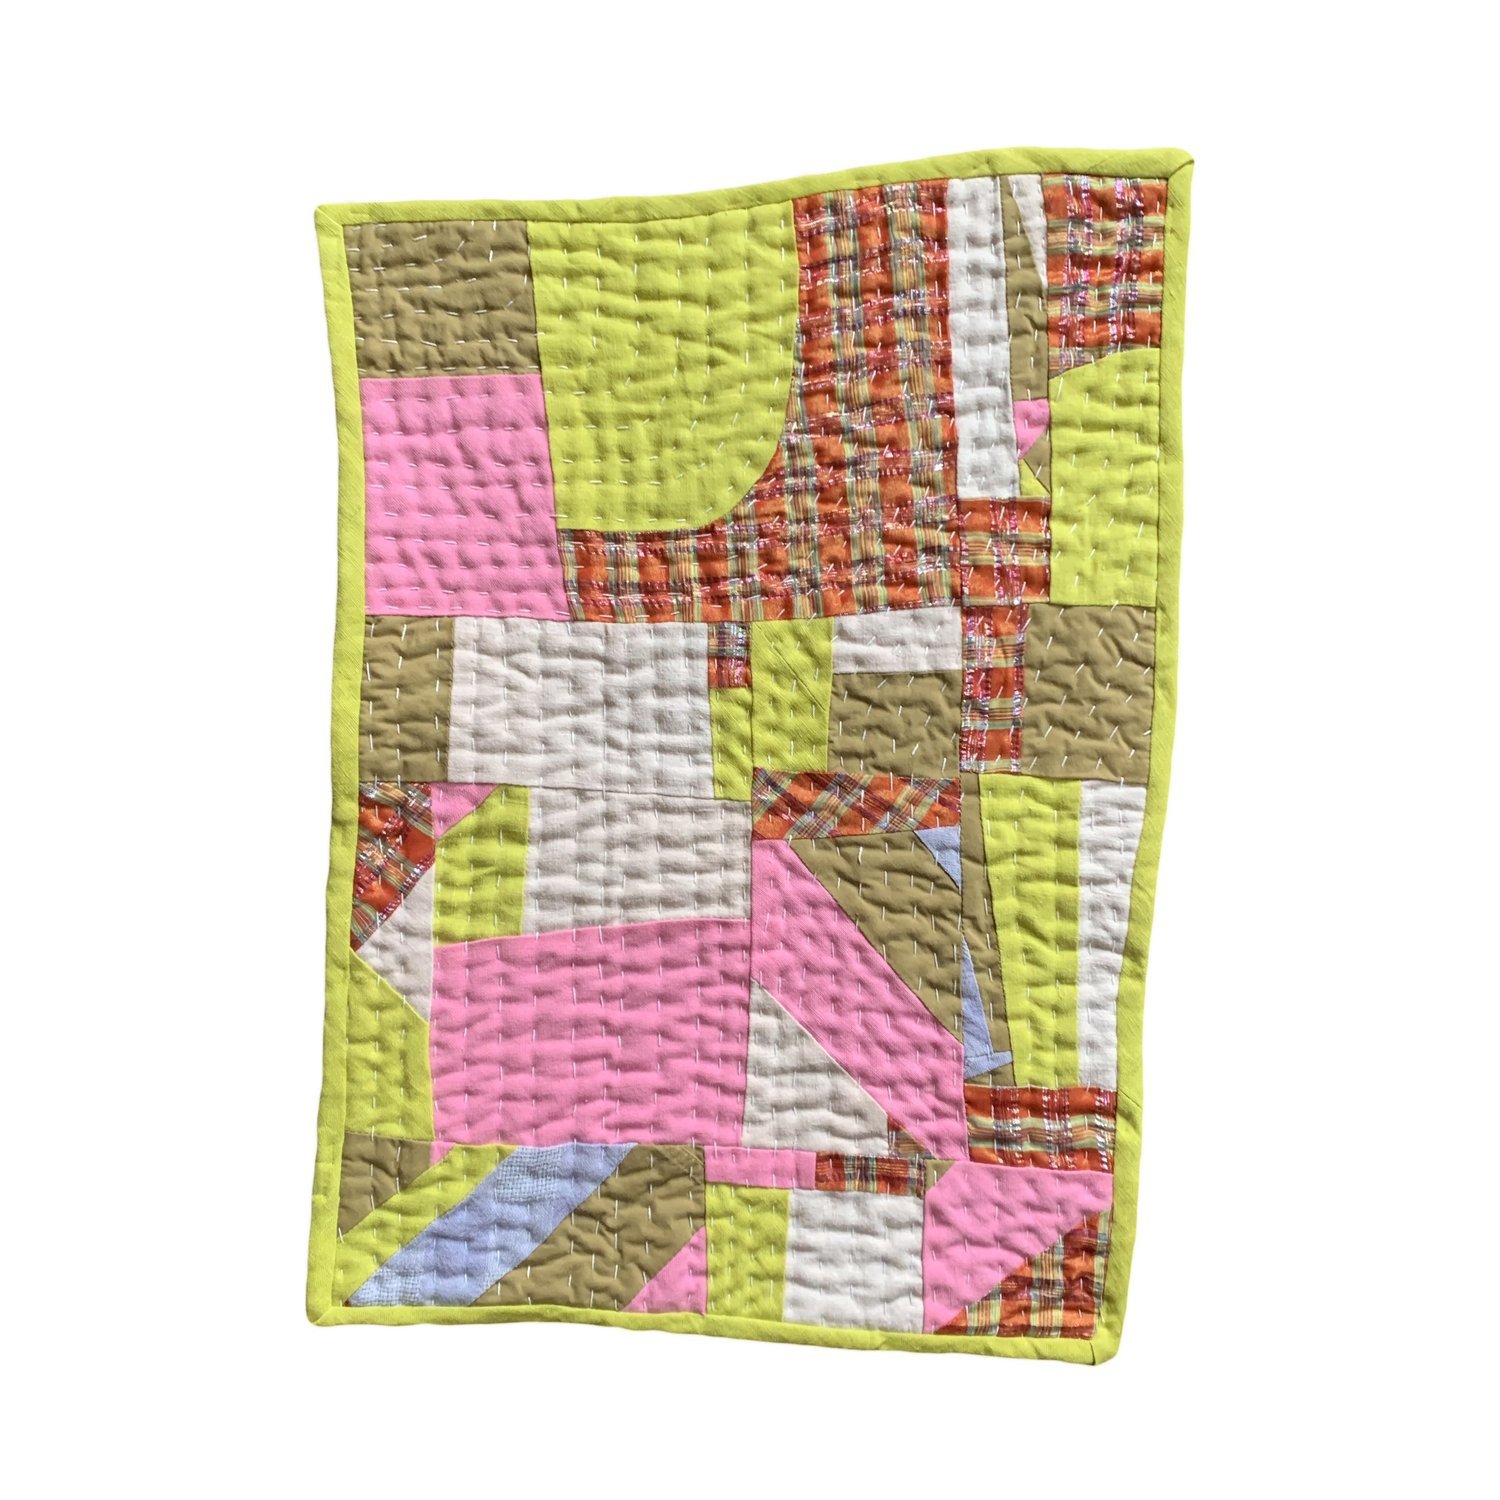 Mini Quilt I –&nbsp;Andrea Arts, $75